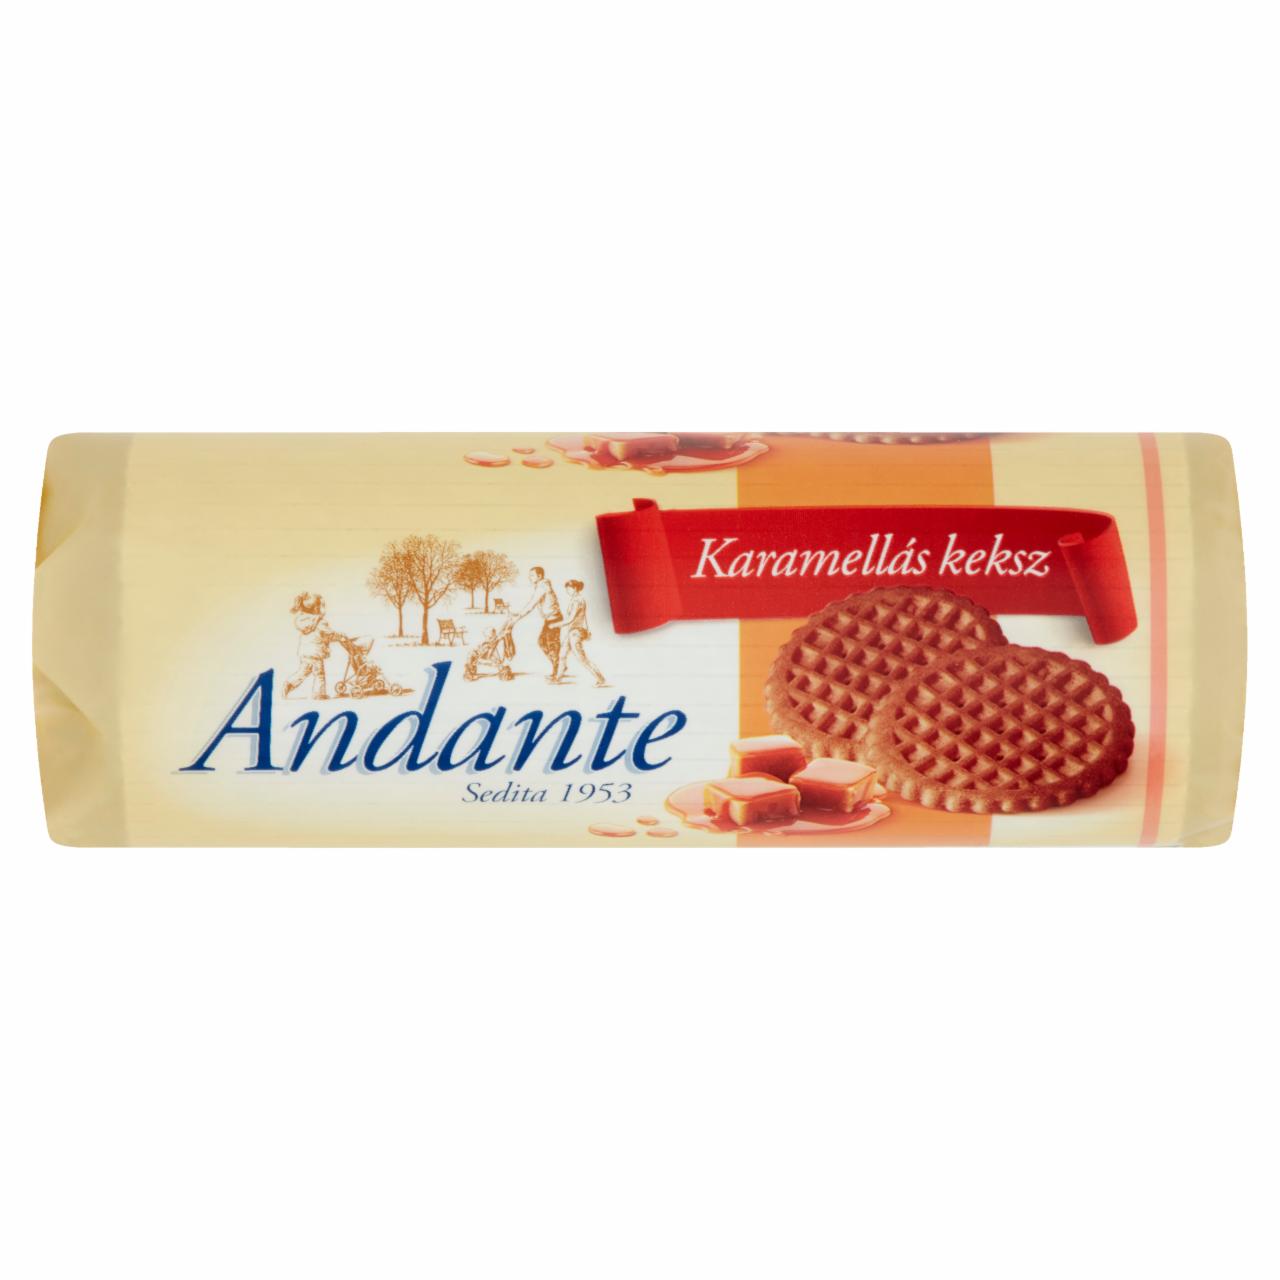 Képek - Andante karamellás keksz 134 g